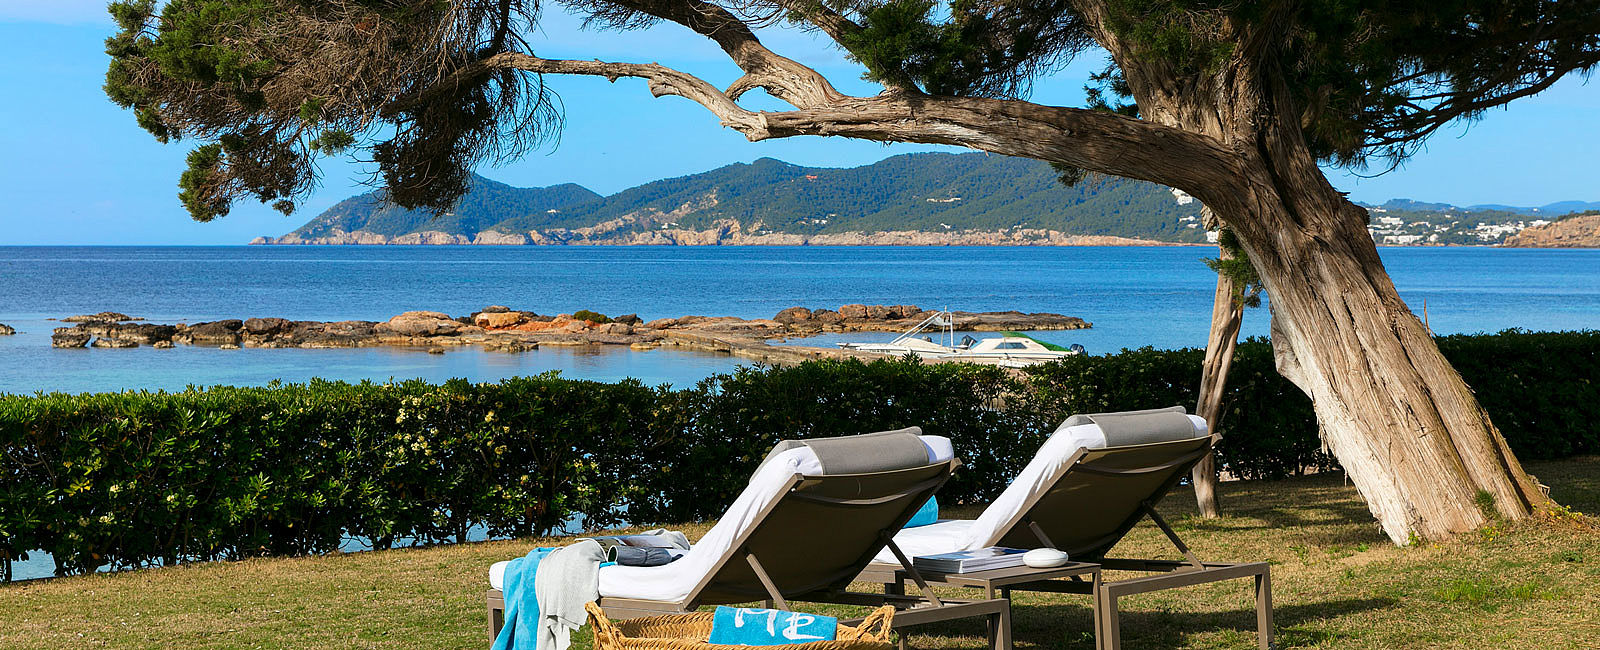 HOTEL NEWS
 ME Ibiza: Sommersaison mit vielen Events 
